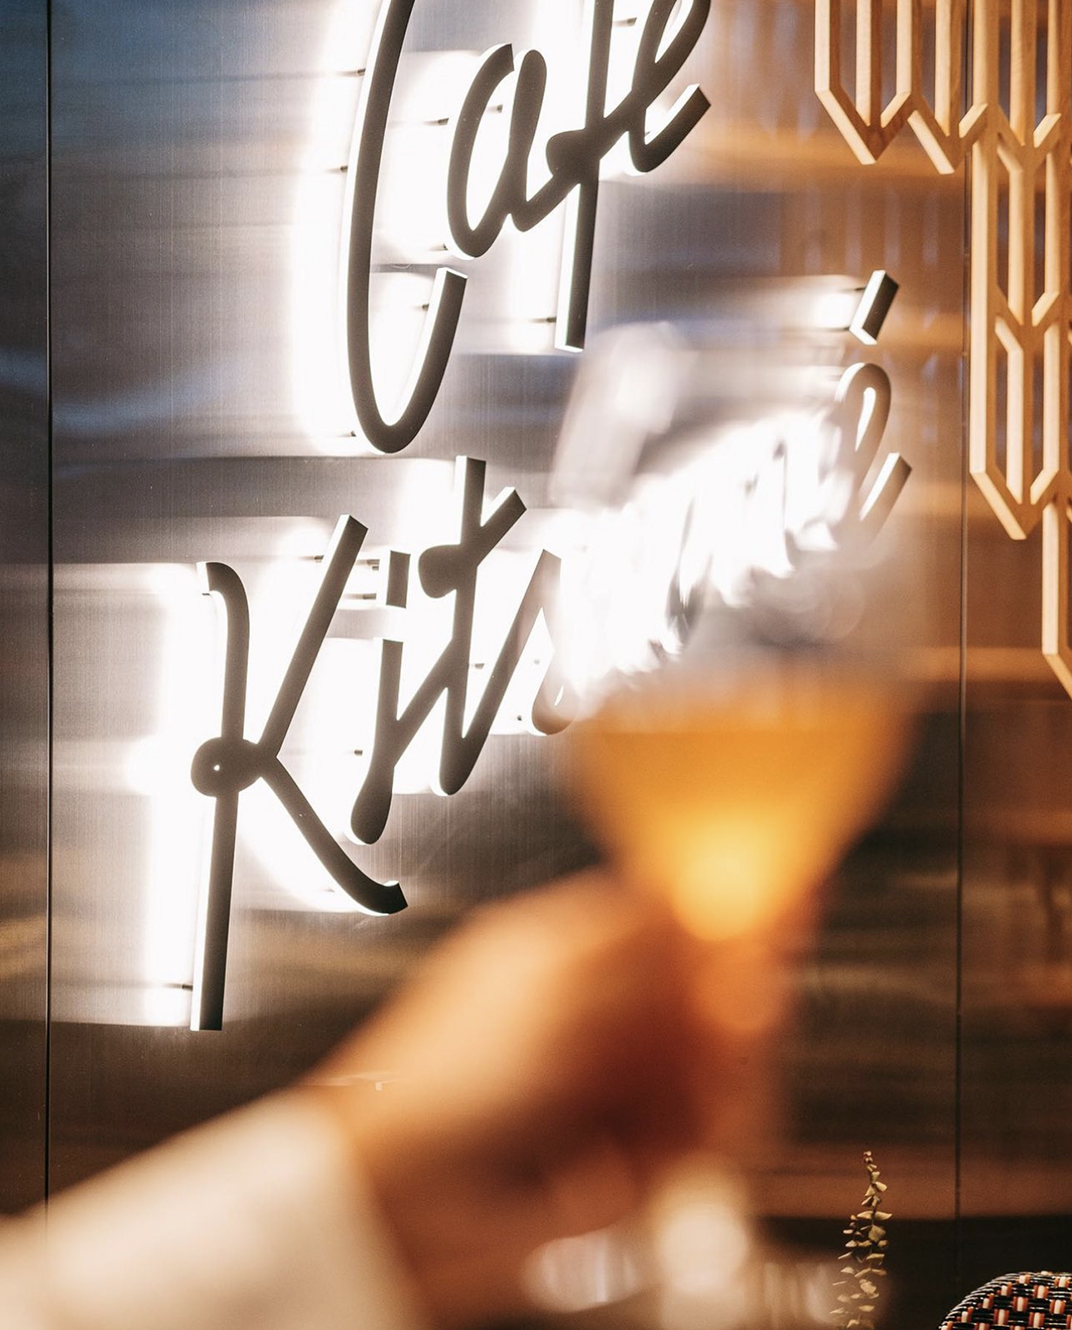 法式日式现代极简主义咖啡店Cafe Kitsune Velaa泰国曼谷 北京 上海 珠海 广州 武汉 杭州 佛山 香港 澳门 logo设计 vi设计 空间设计